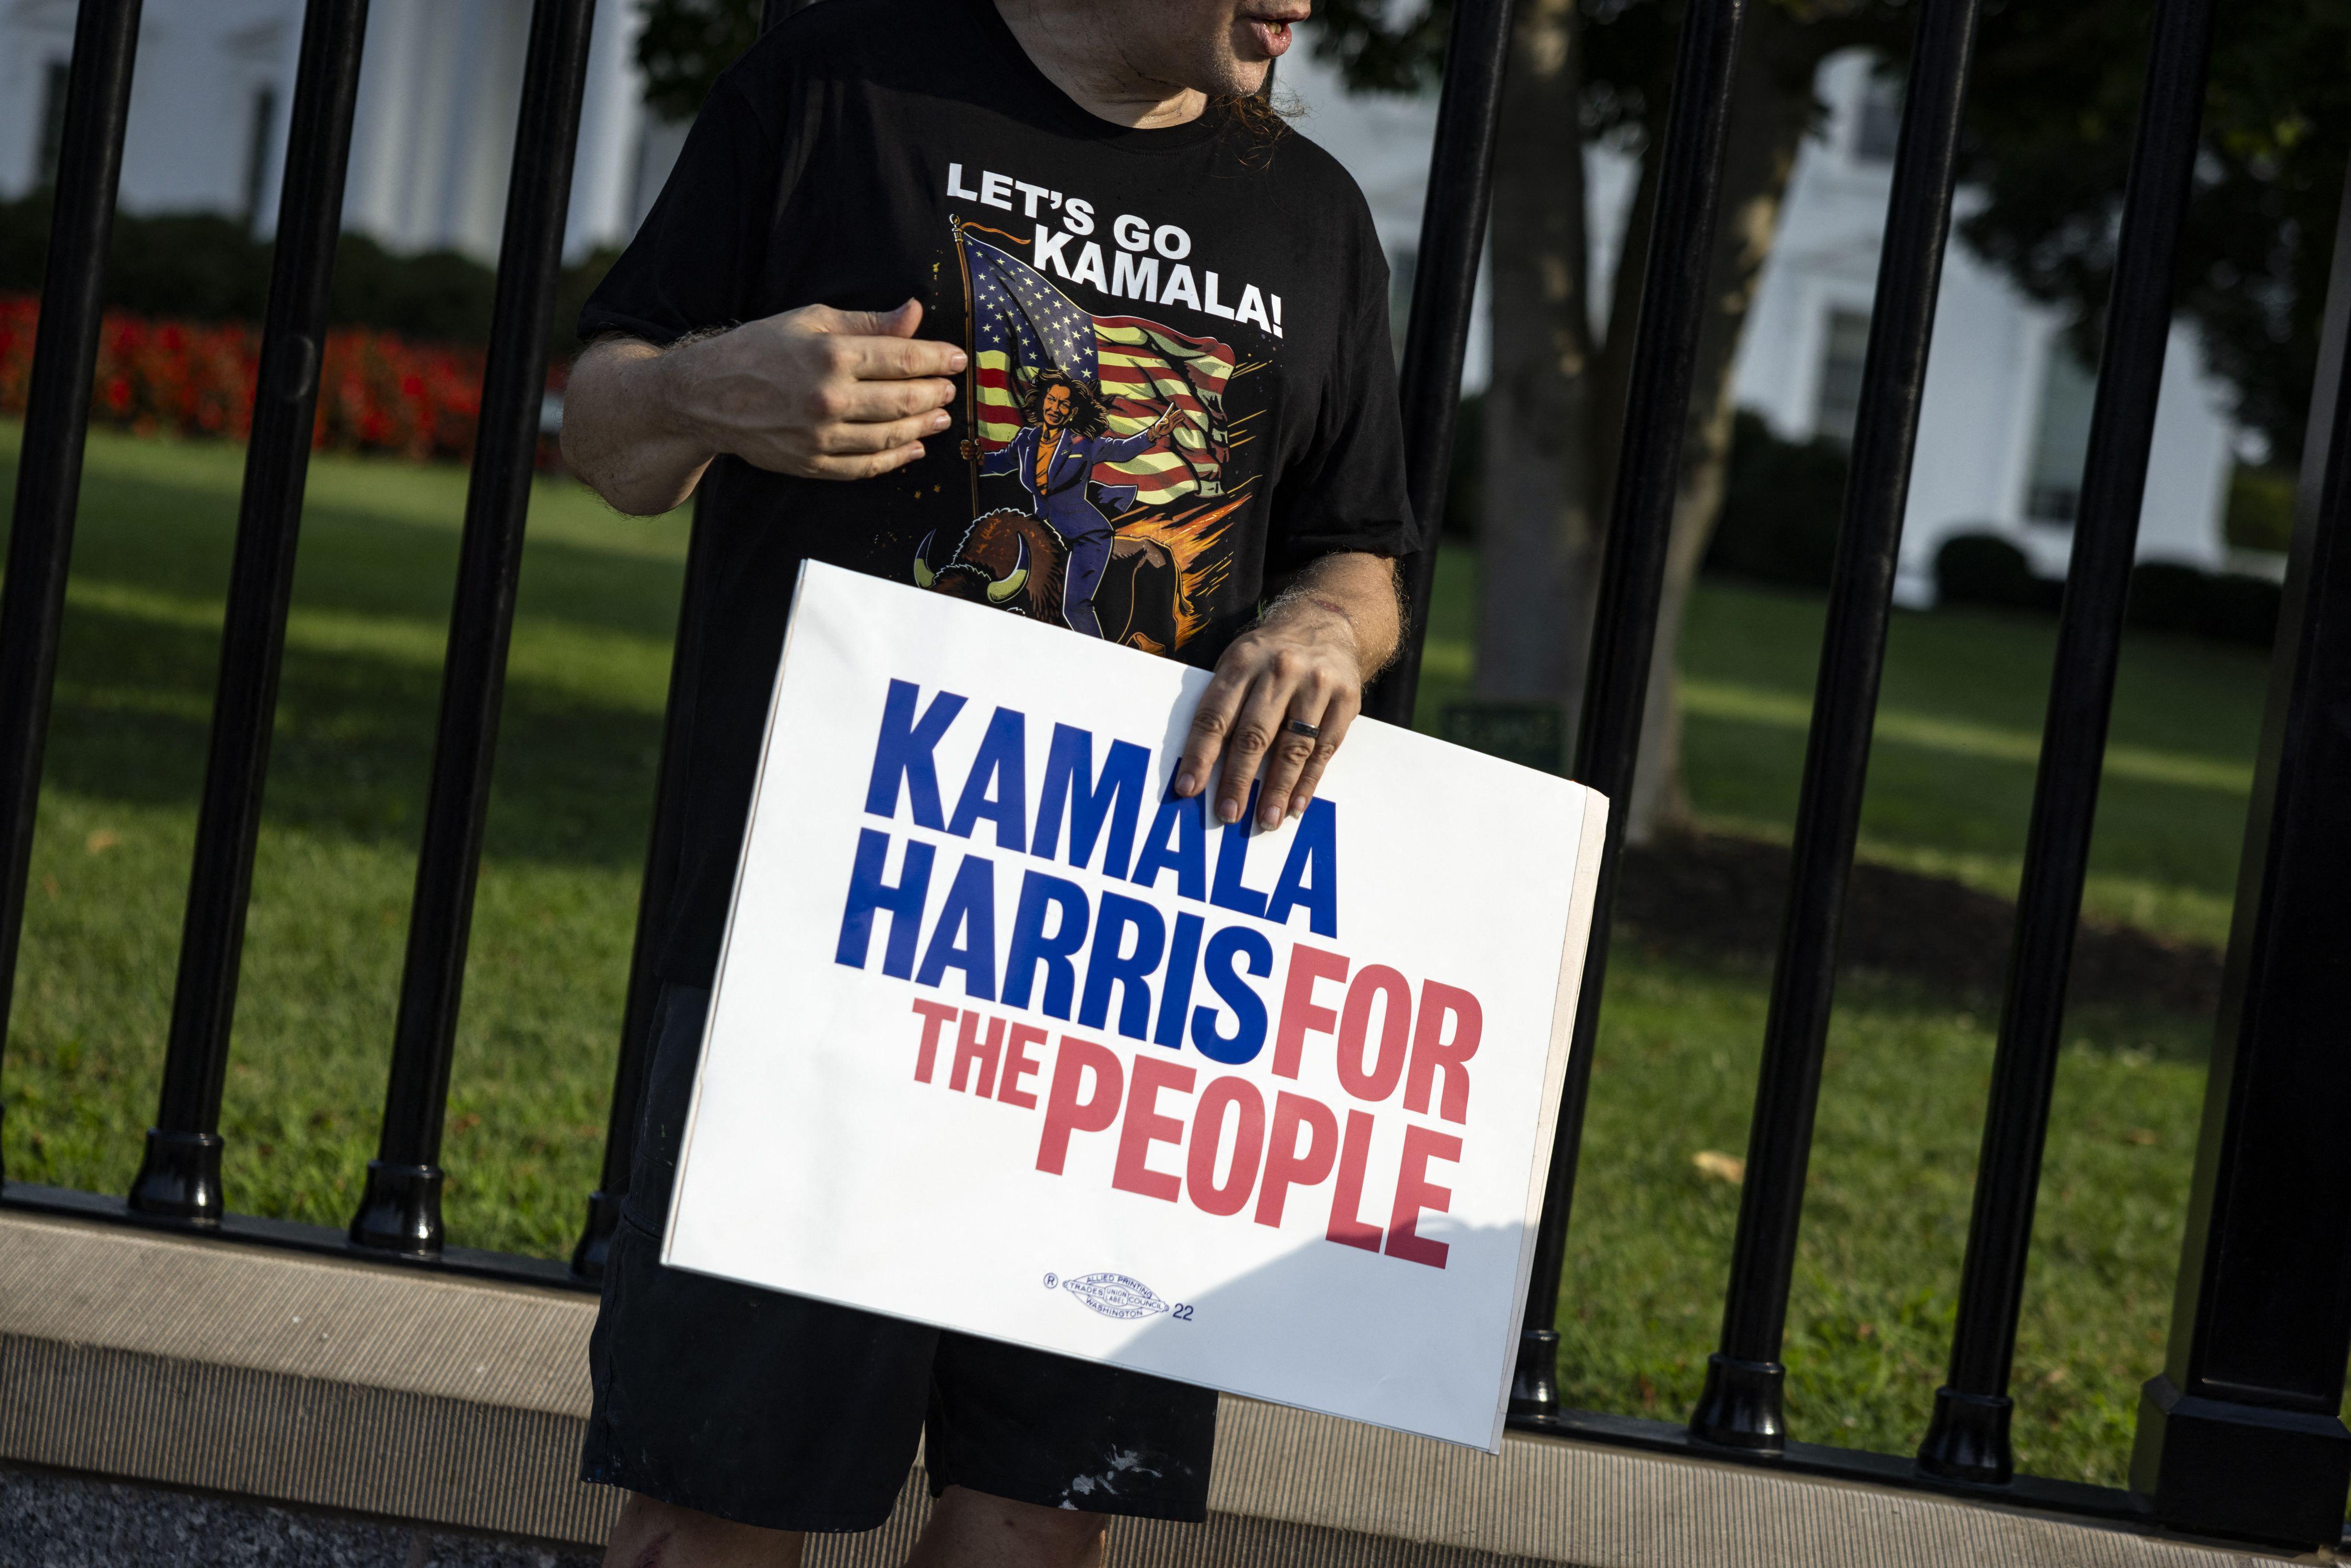 Ritiro Biden - la sfida di Kamala Harris: oltre 500 delegati Dem già pronti a sostenerla